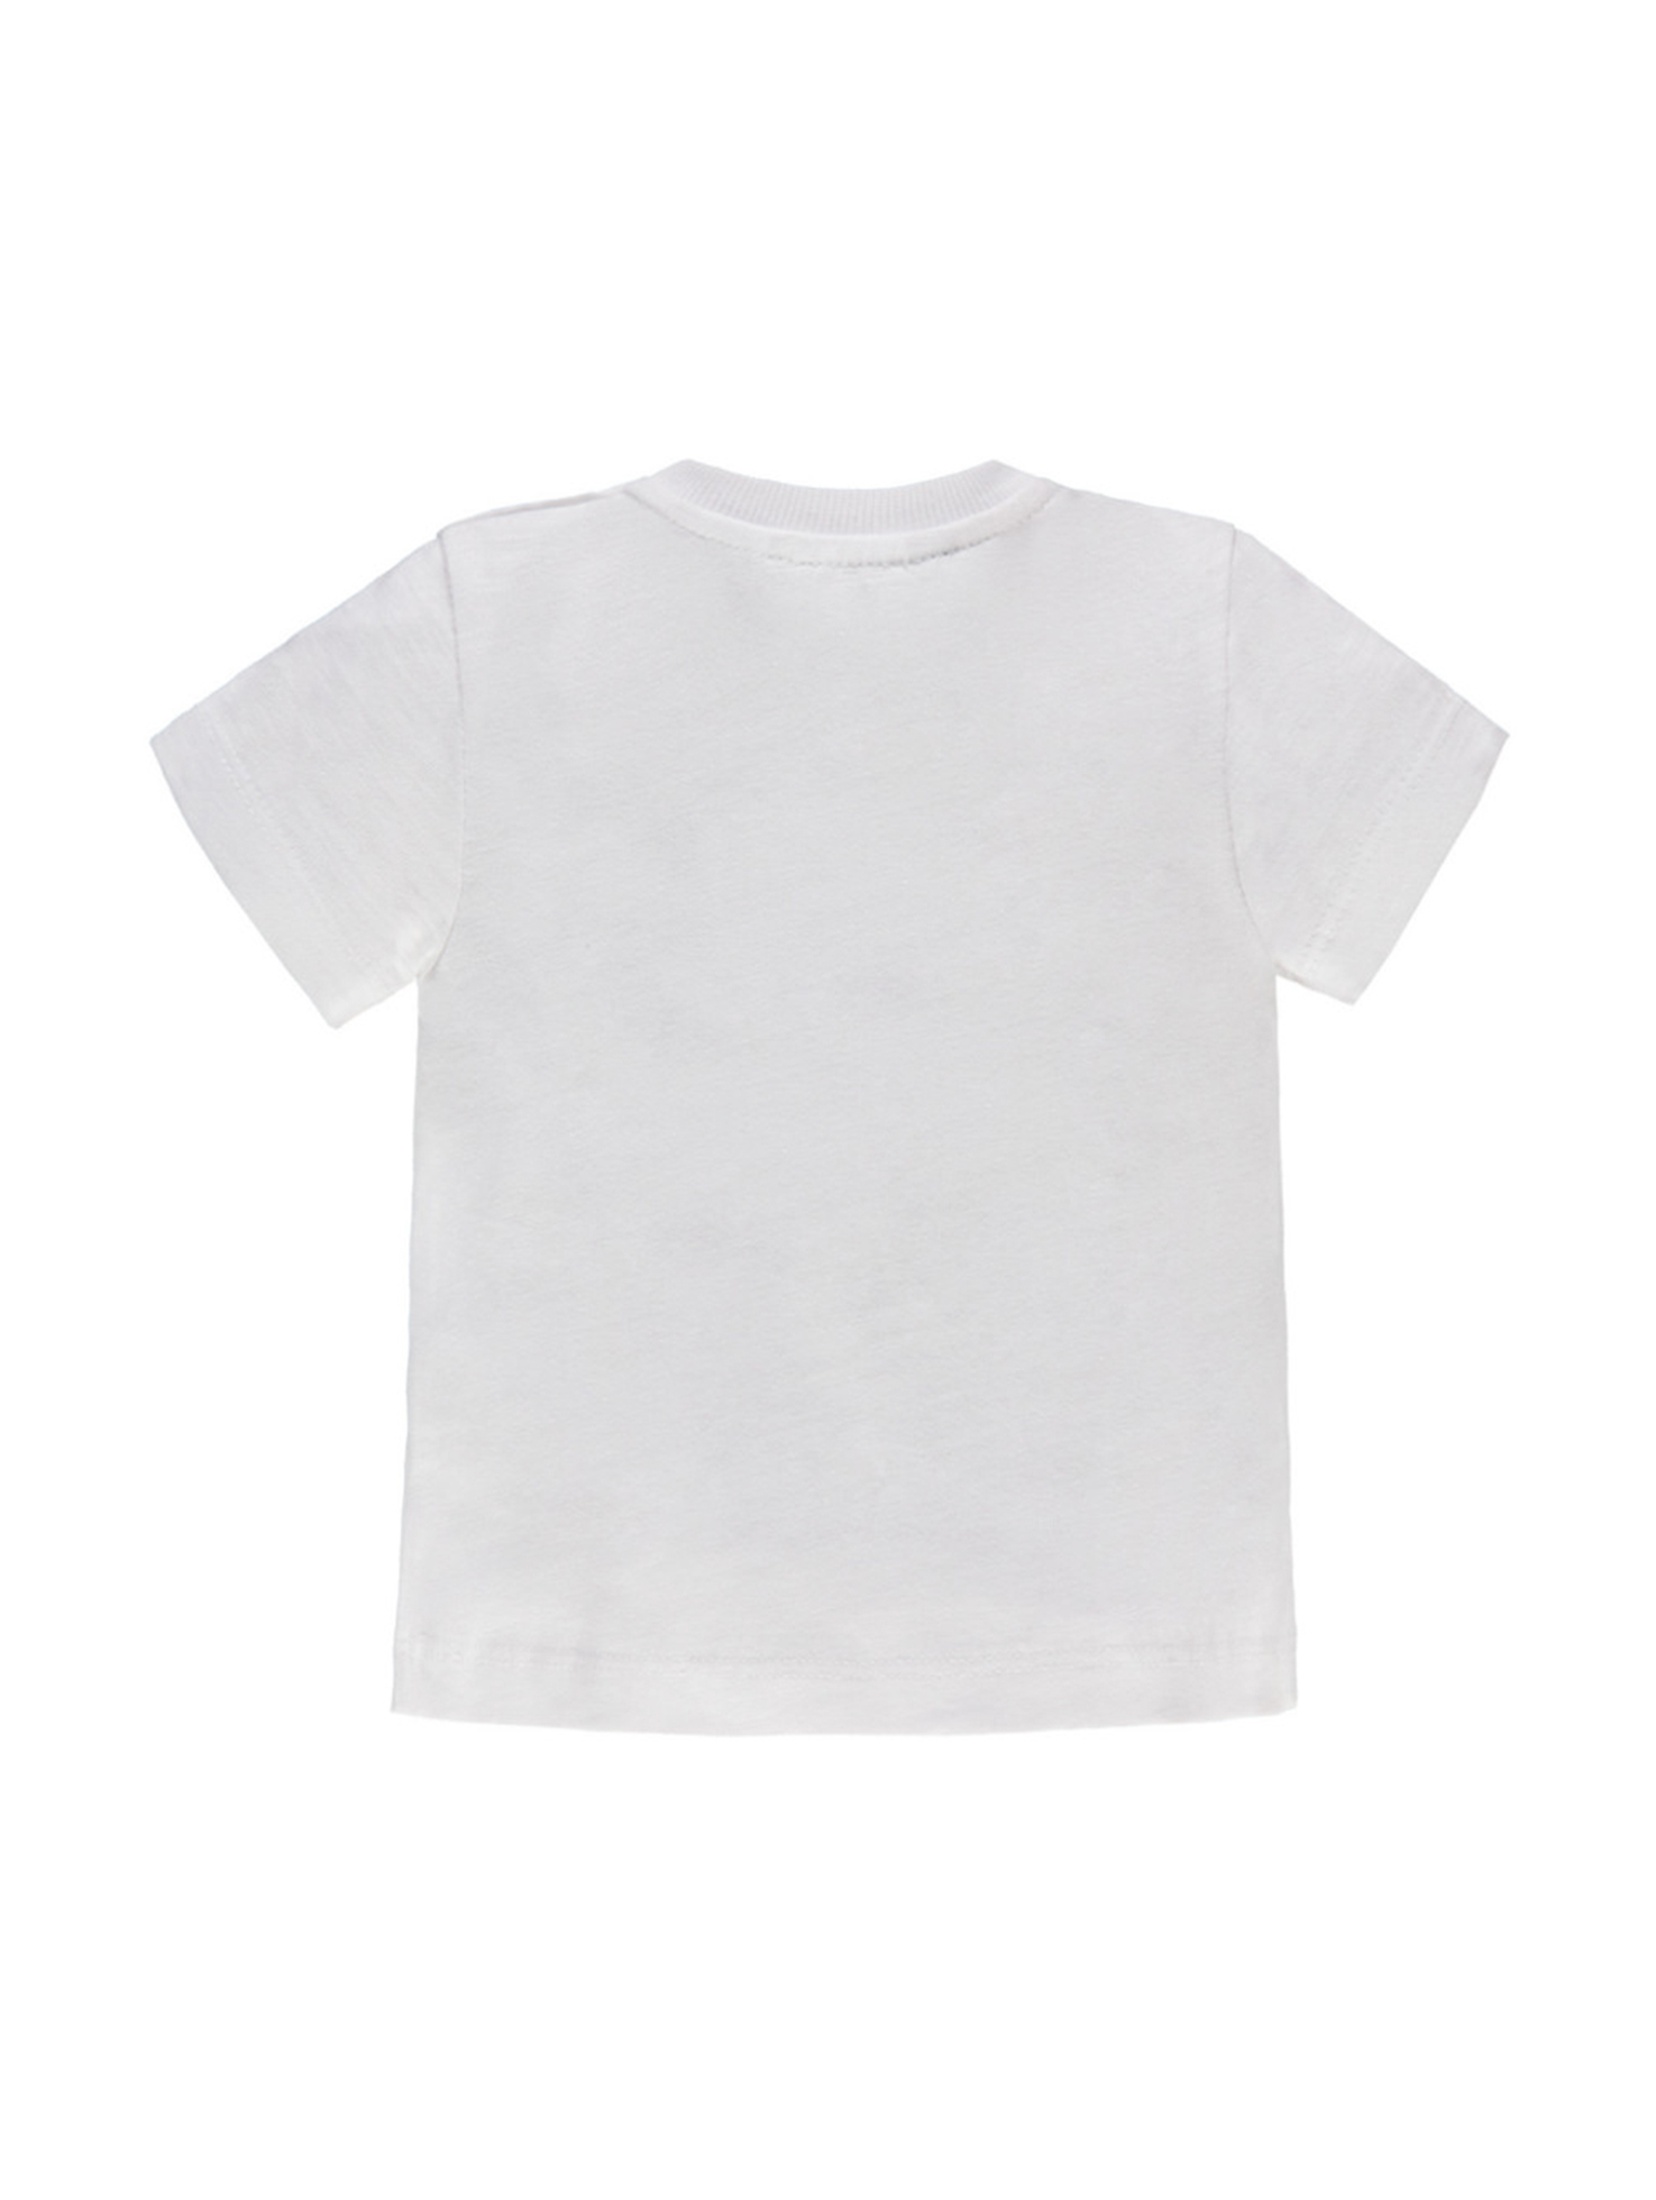 Chłopięca niemowlęca koszulka z krótkim rękawem biała